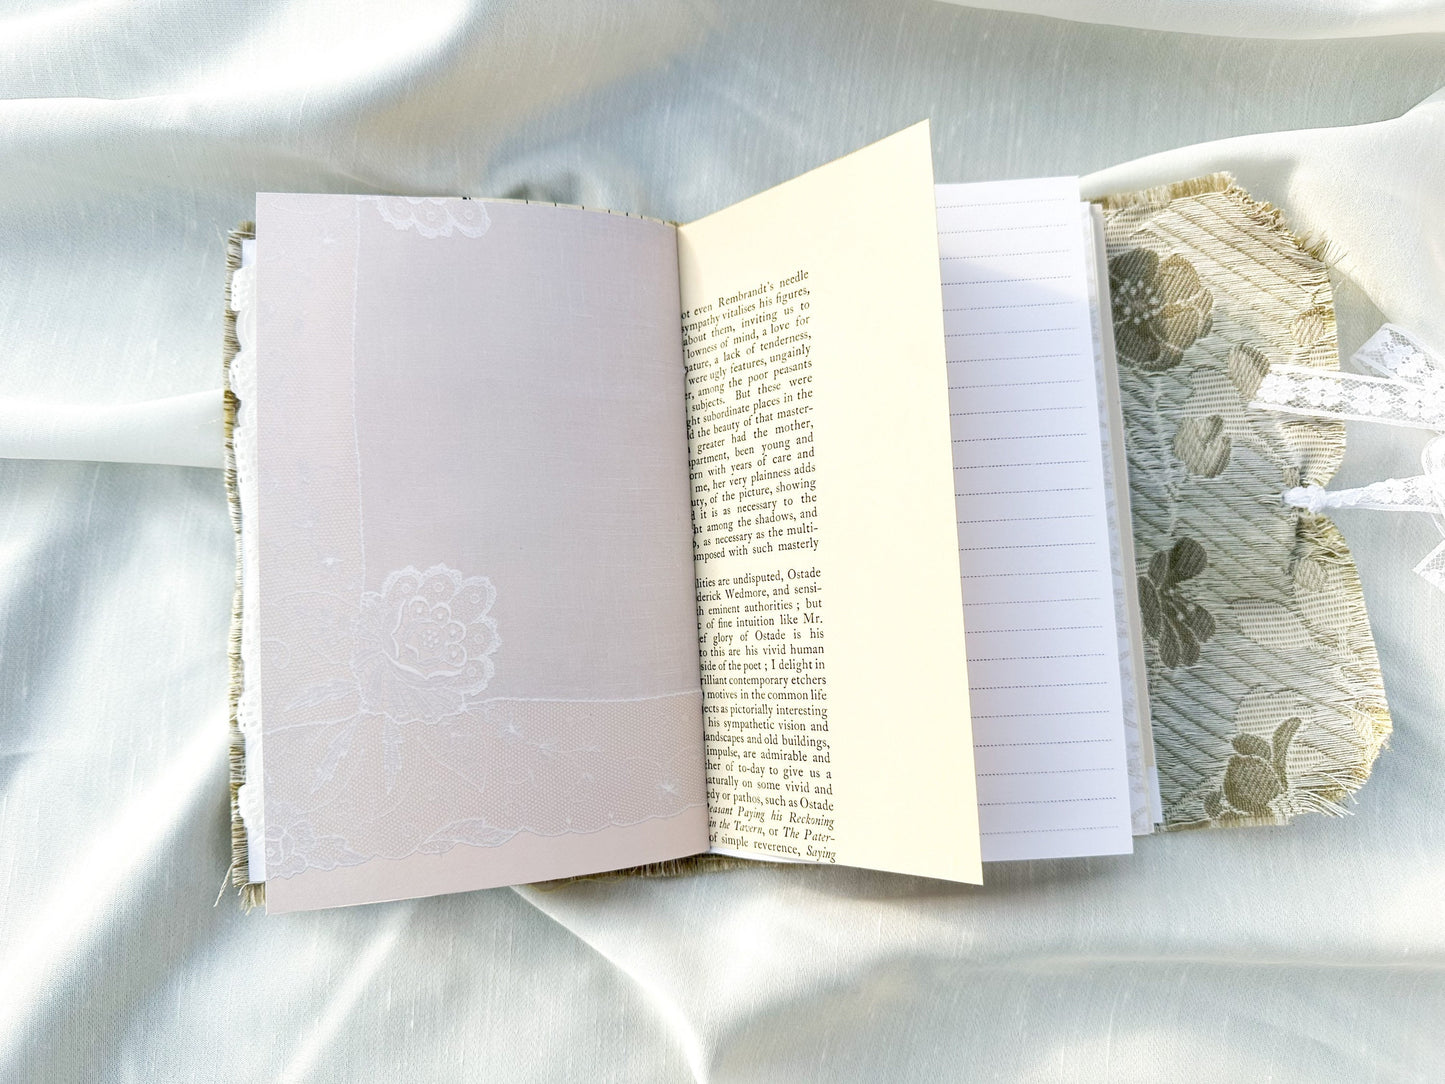 Junk Journal, Naked Journal made from vintage fabric, Handmade Journal, Art Journal, Gift Idea